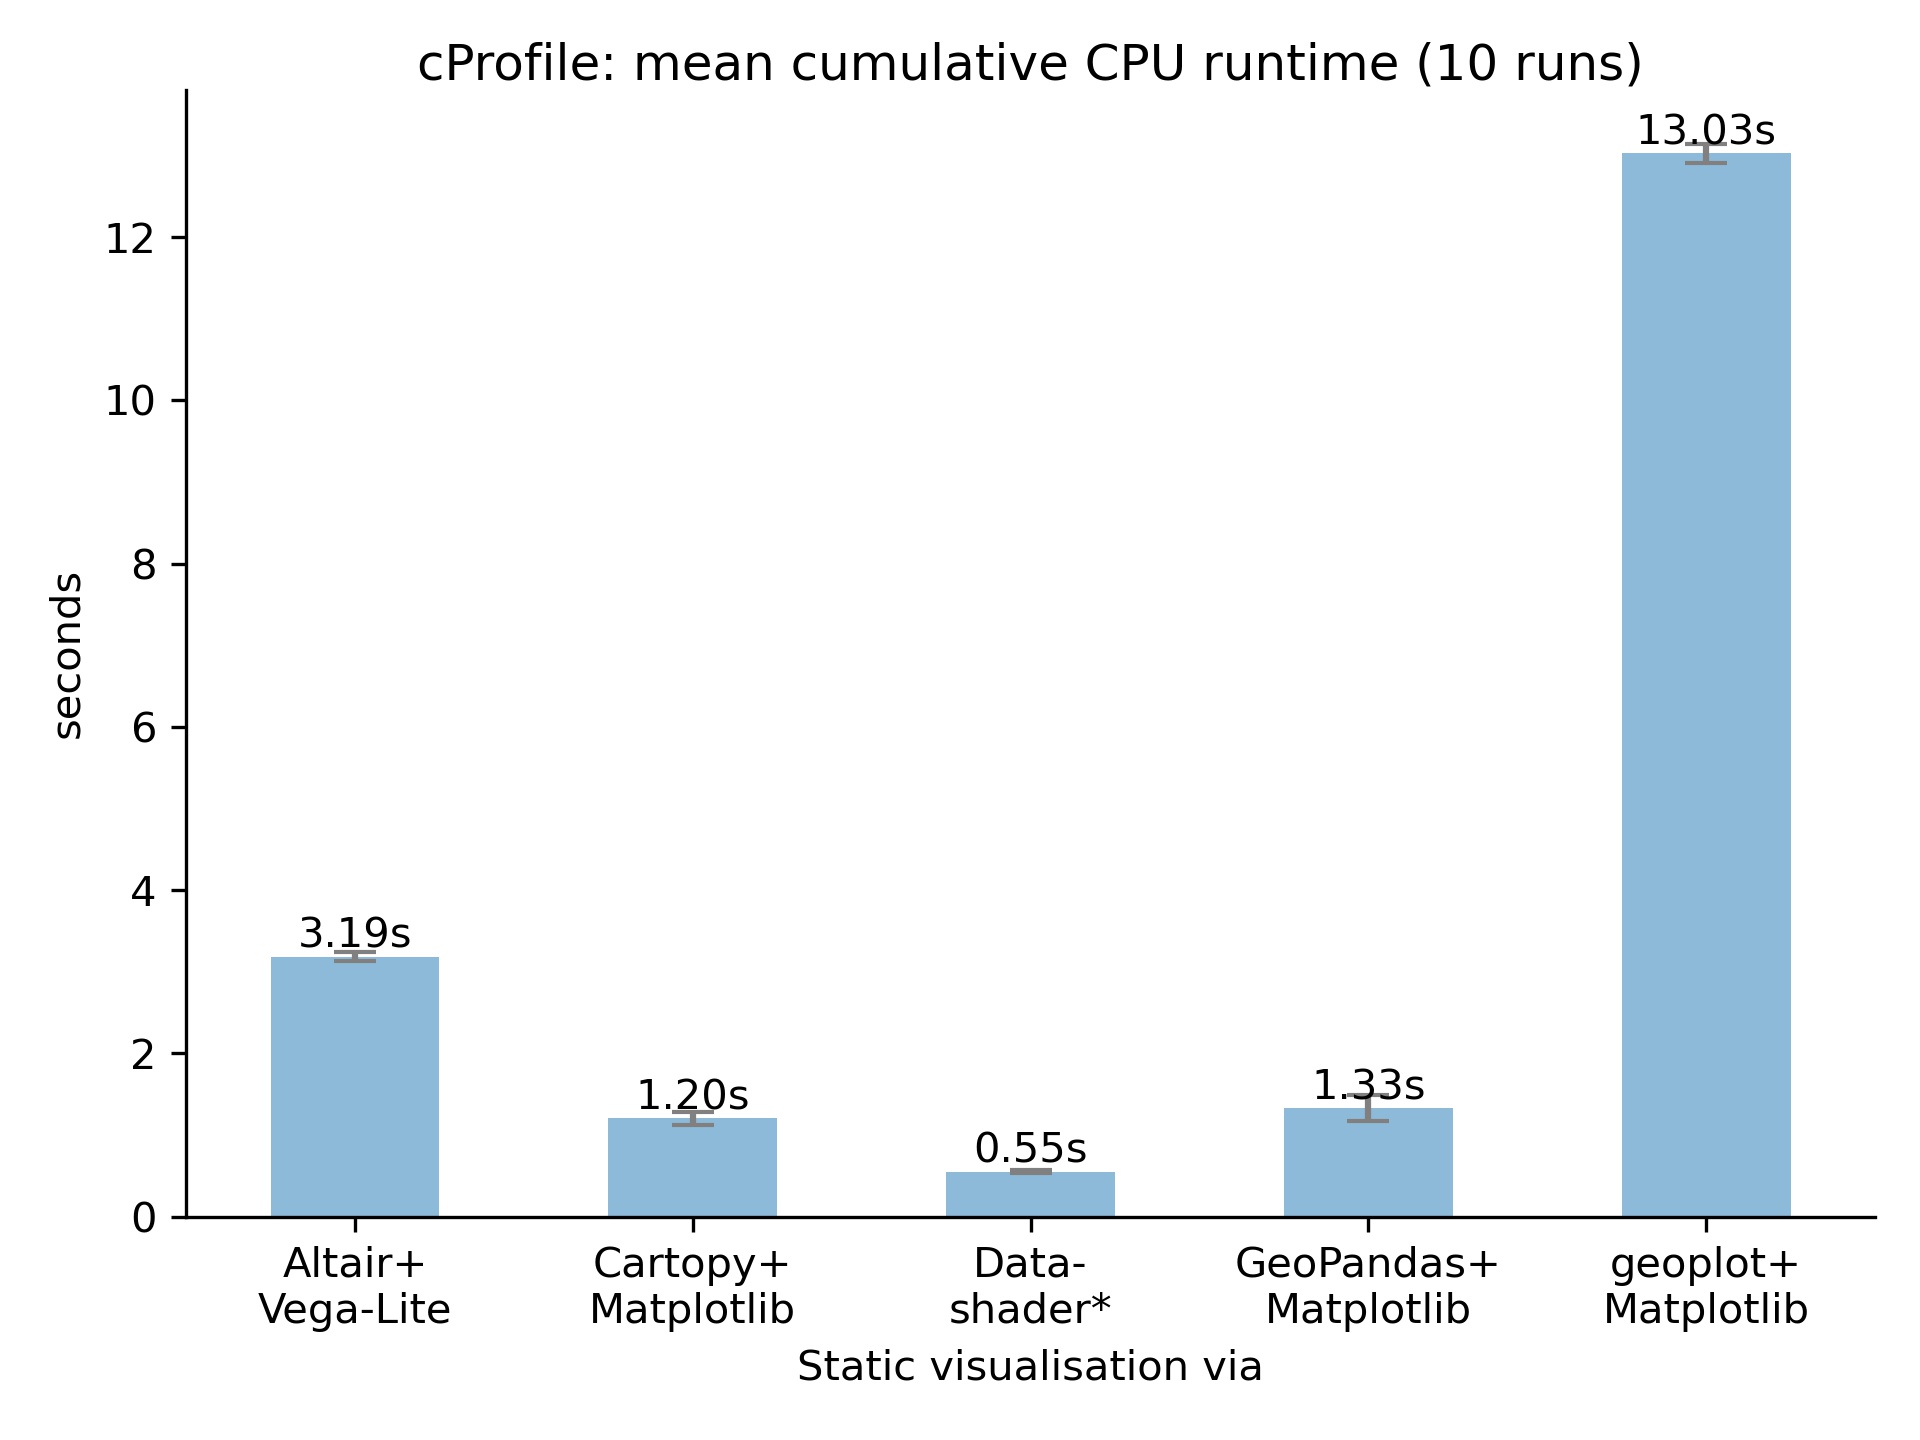 cProfile comparison - static